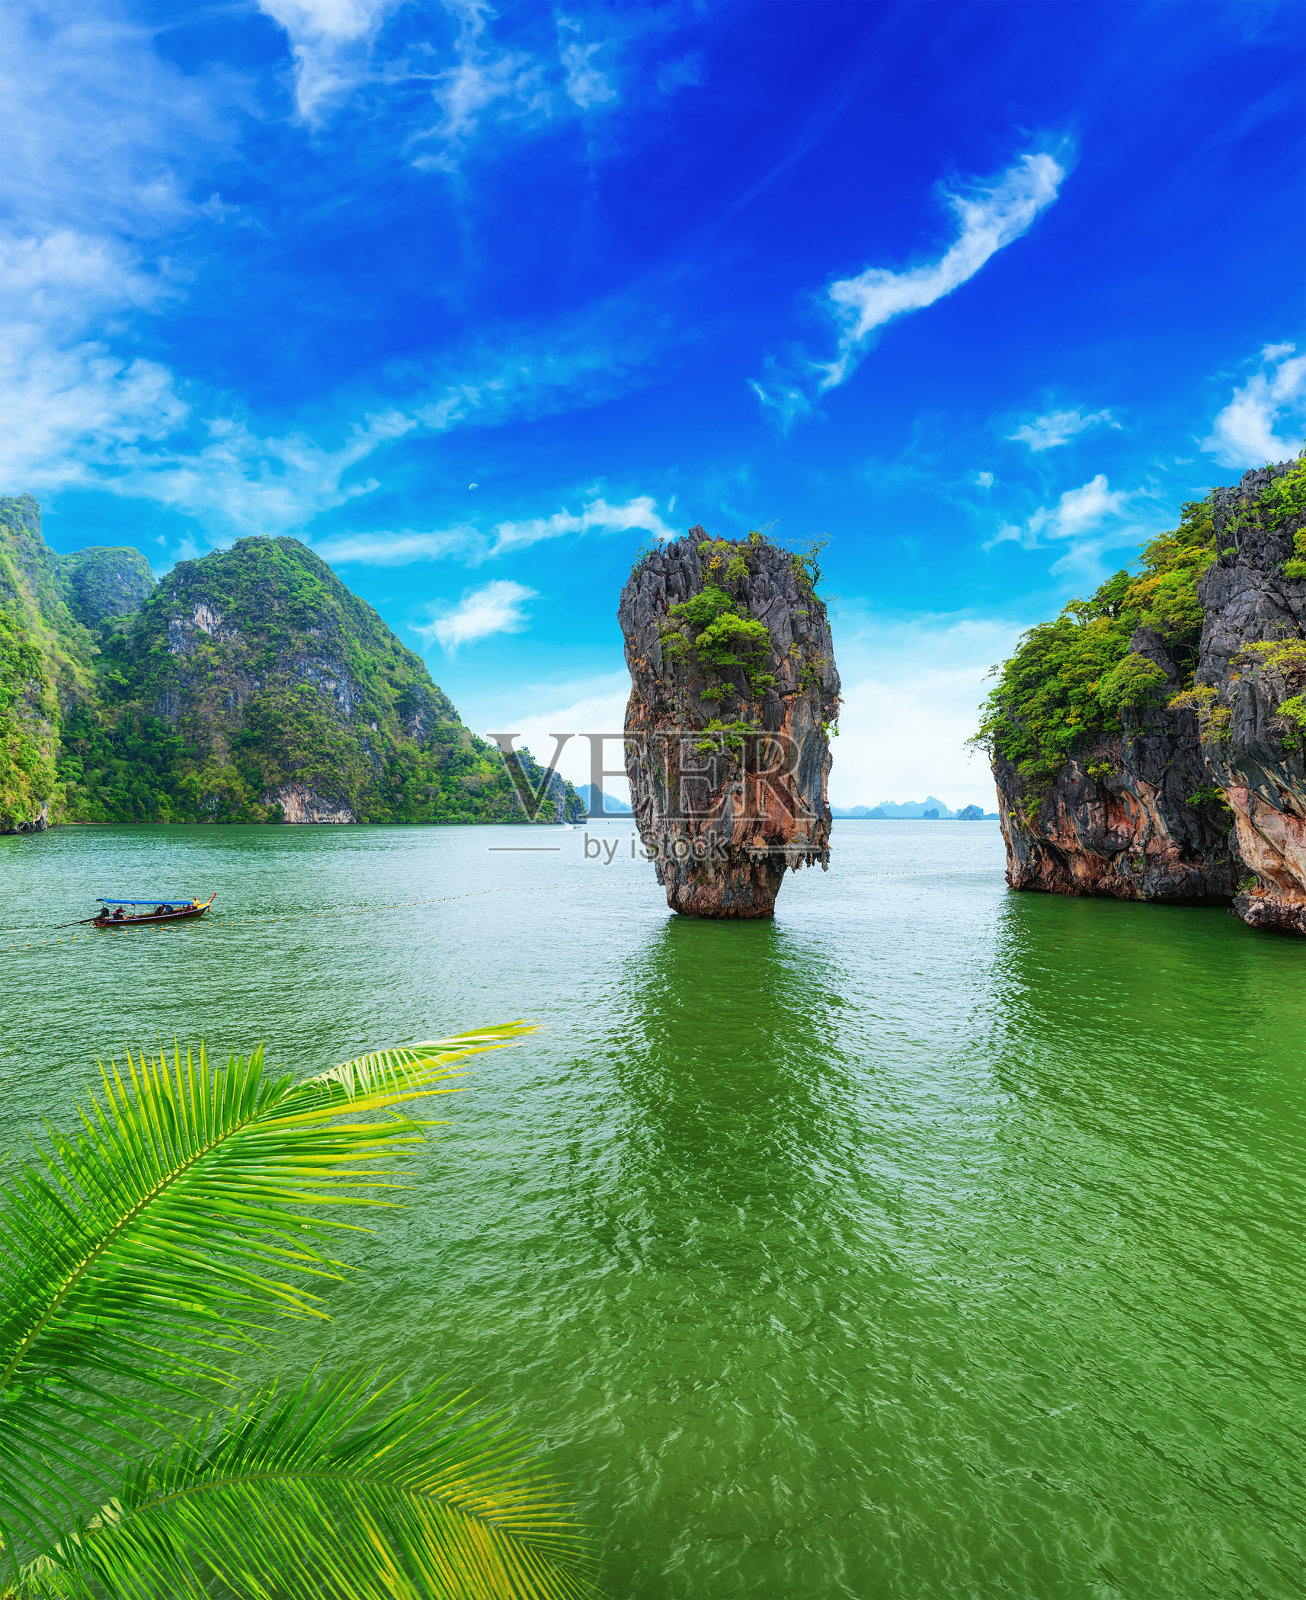 詹姆斯邦德岛泰国旅游目的地照片摄影图片